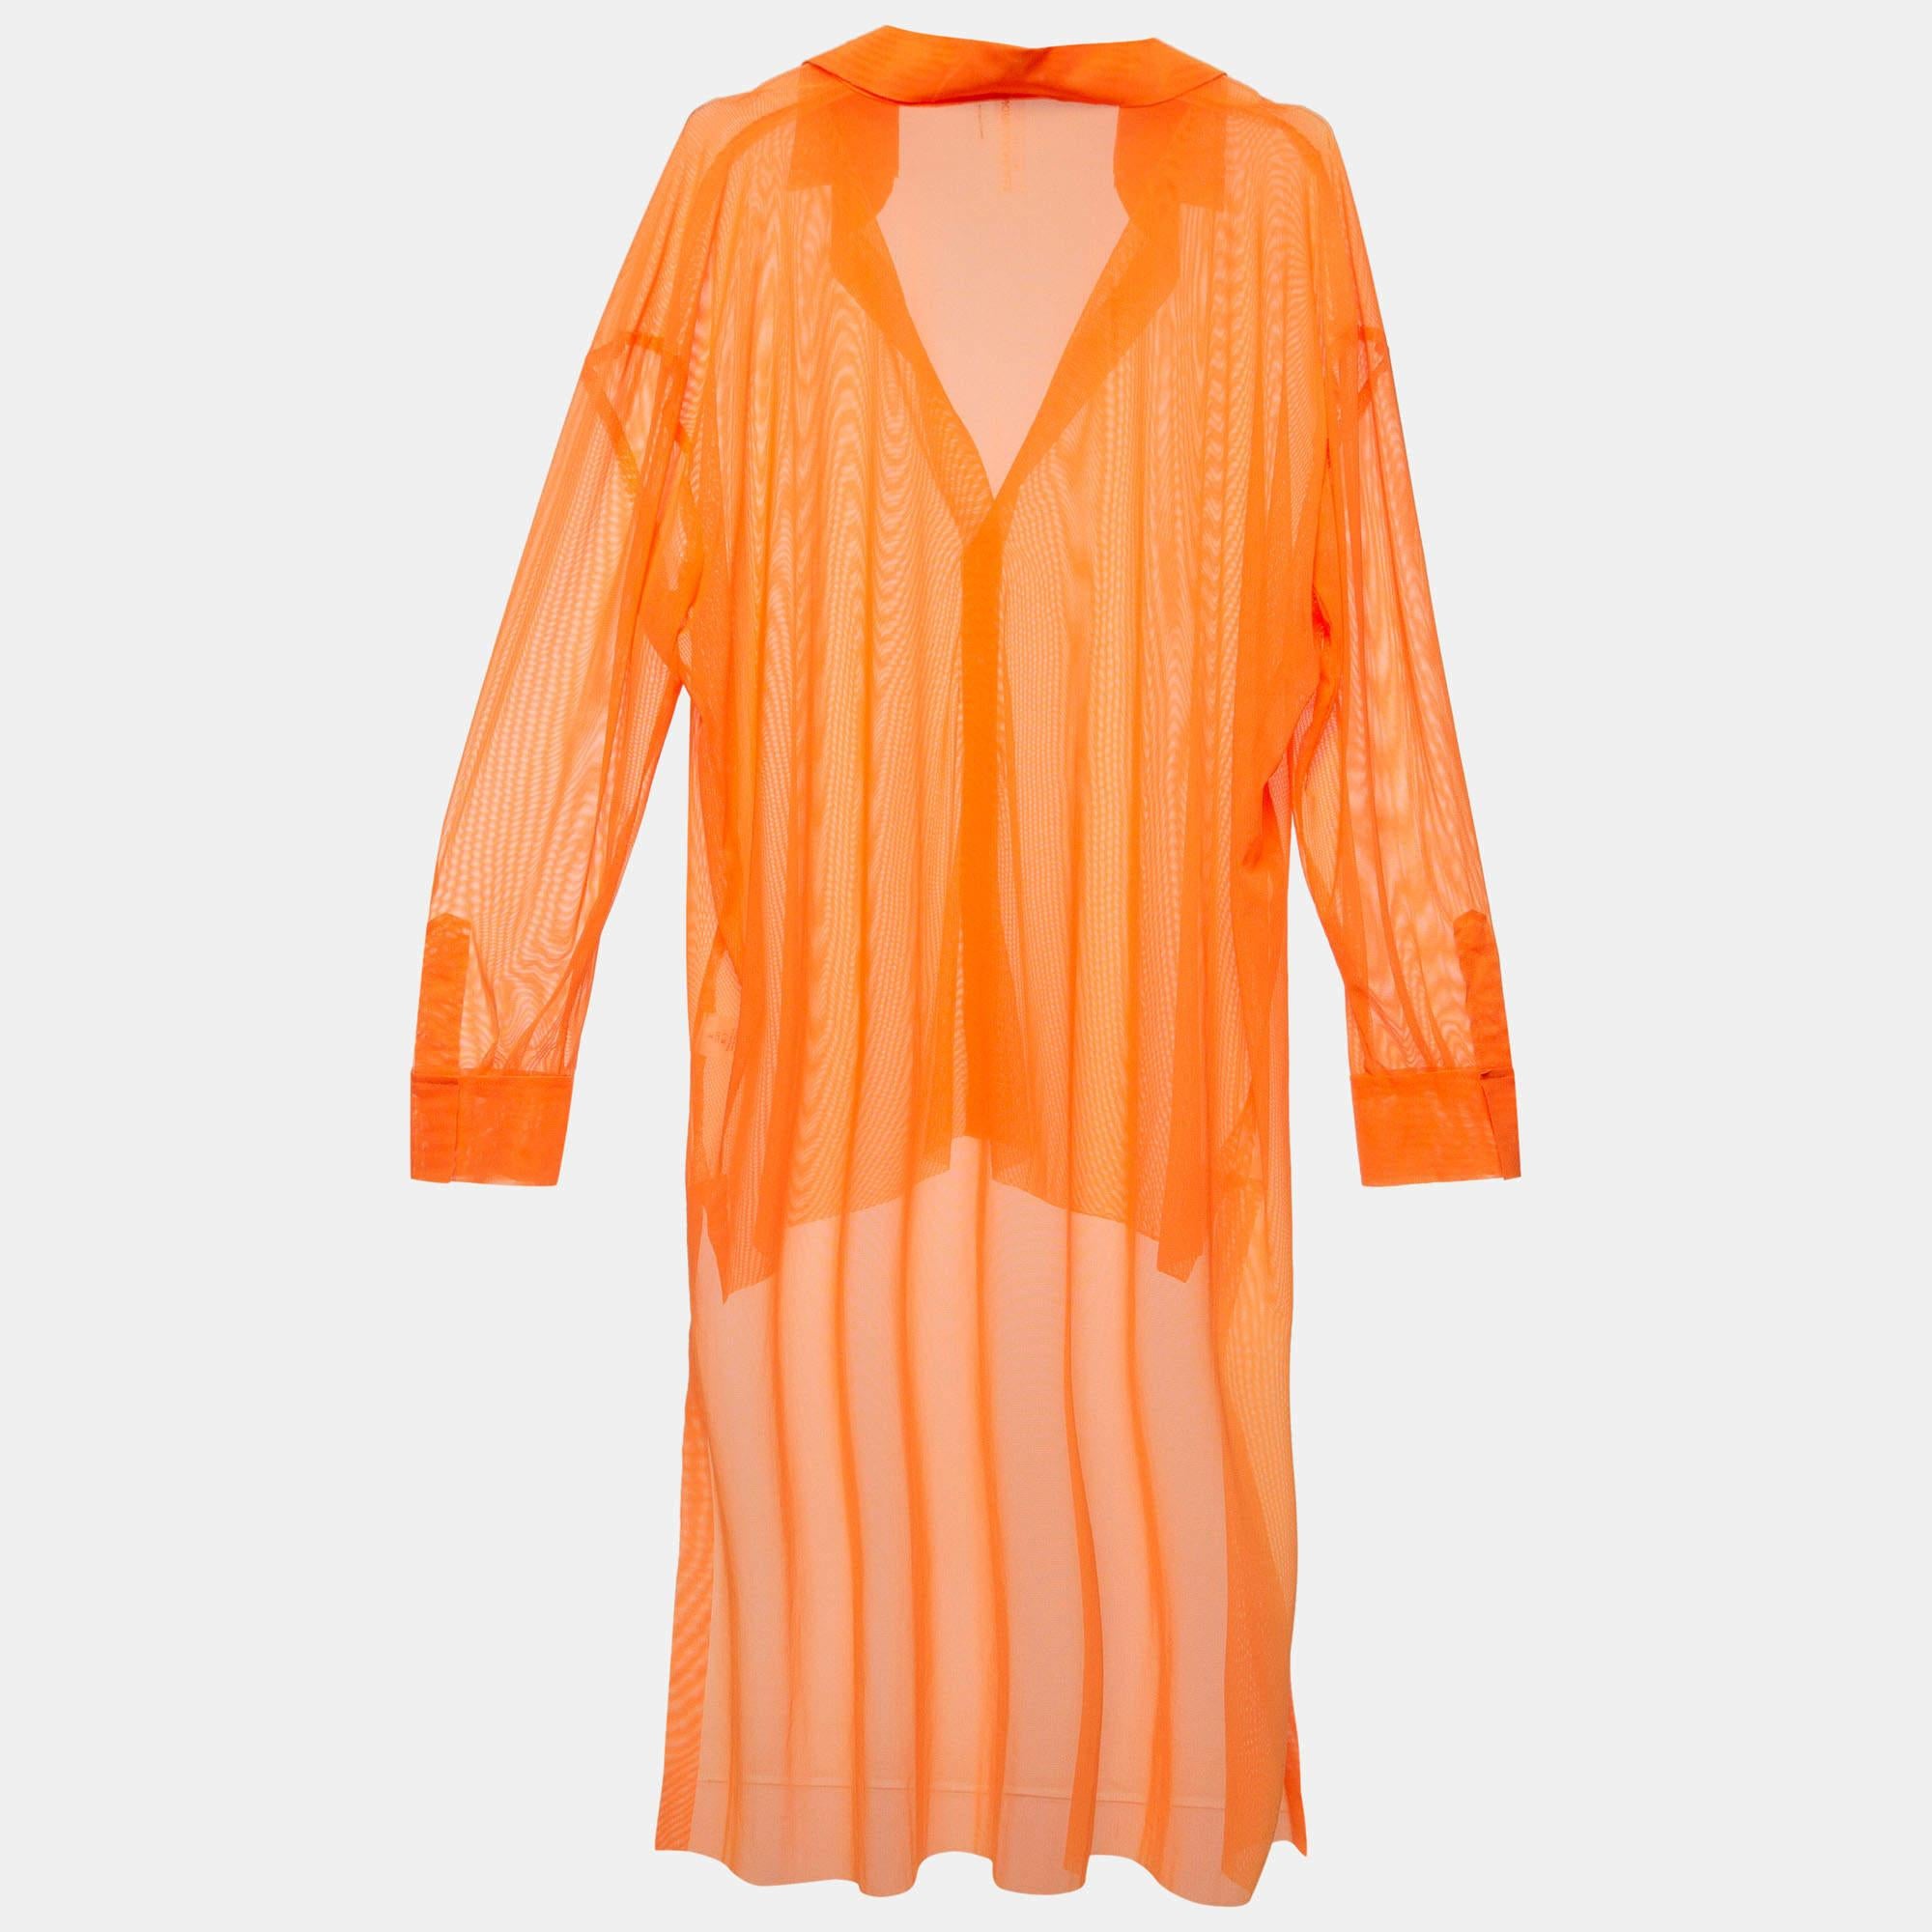 Das orangefarbene Hemd von Norma Kamali hat ein durchsichtiges Netzmuster, lange Ärmel und einen hochgeschlossenen Saum. Kombinieren Sie es mit einem Kleid darunter oder einem Top und Jeans.

